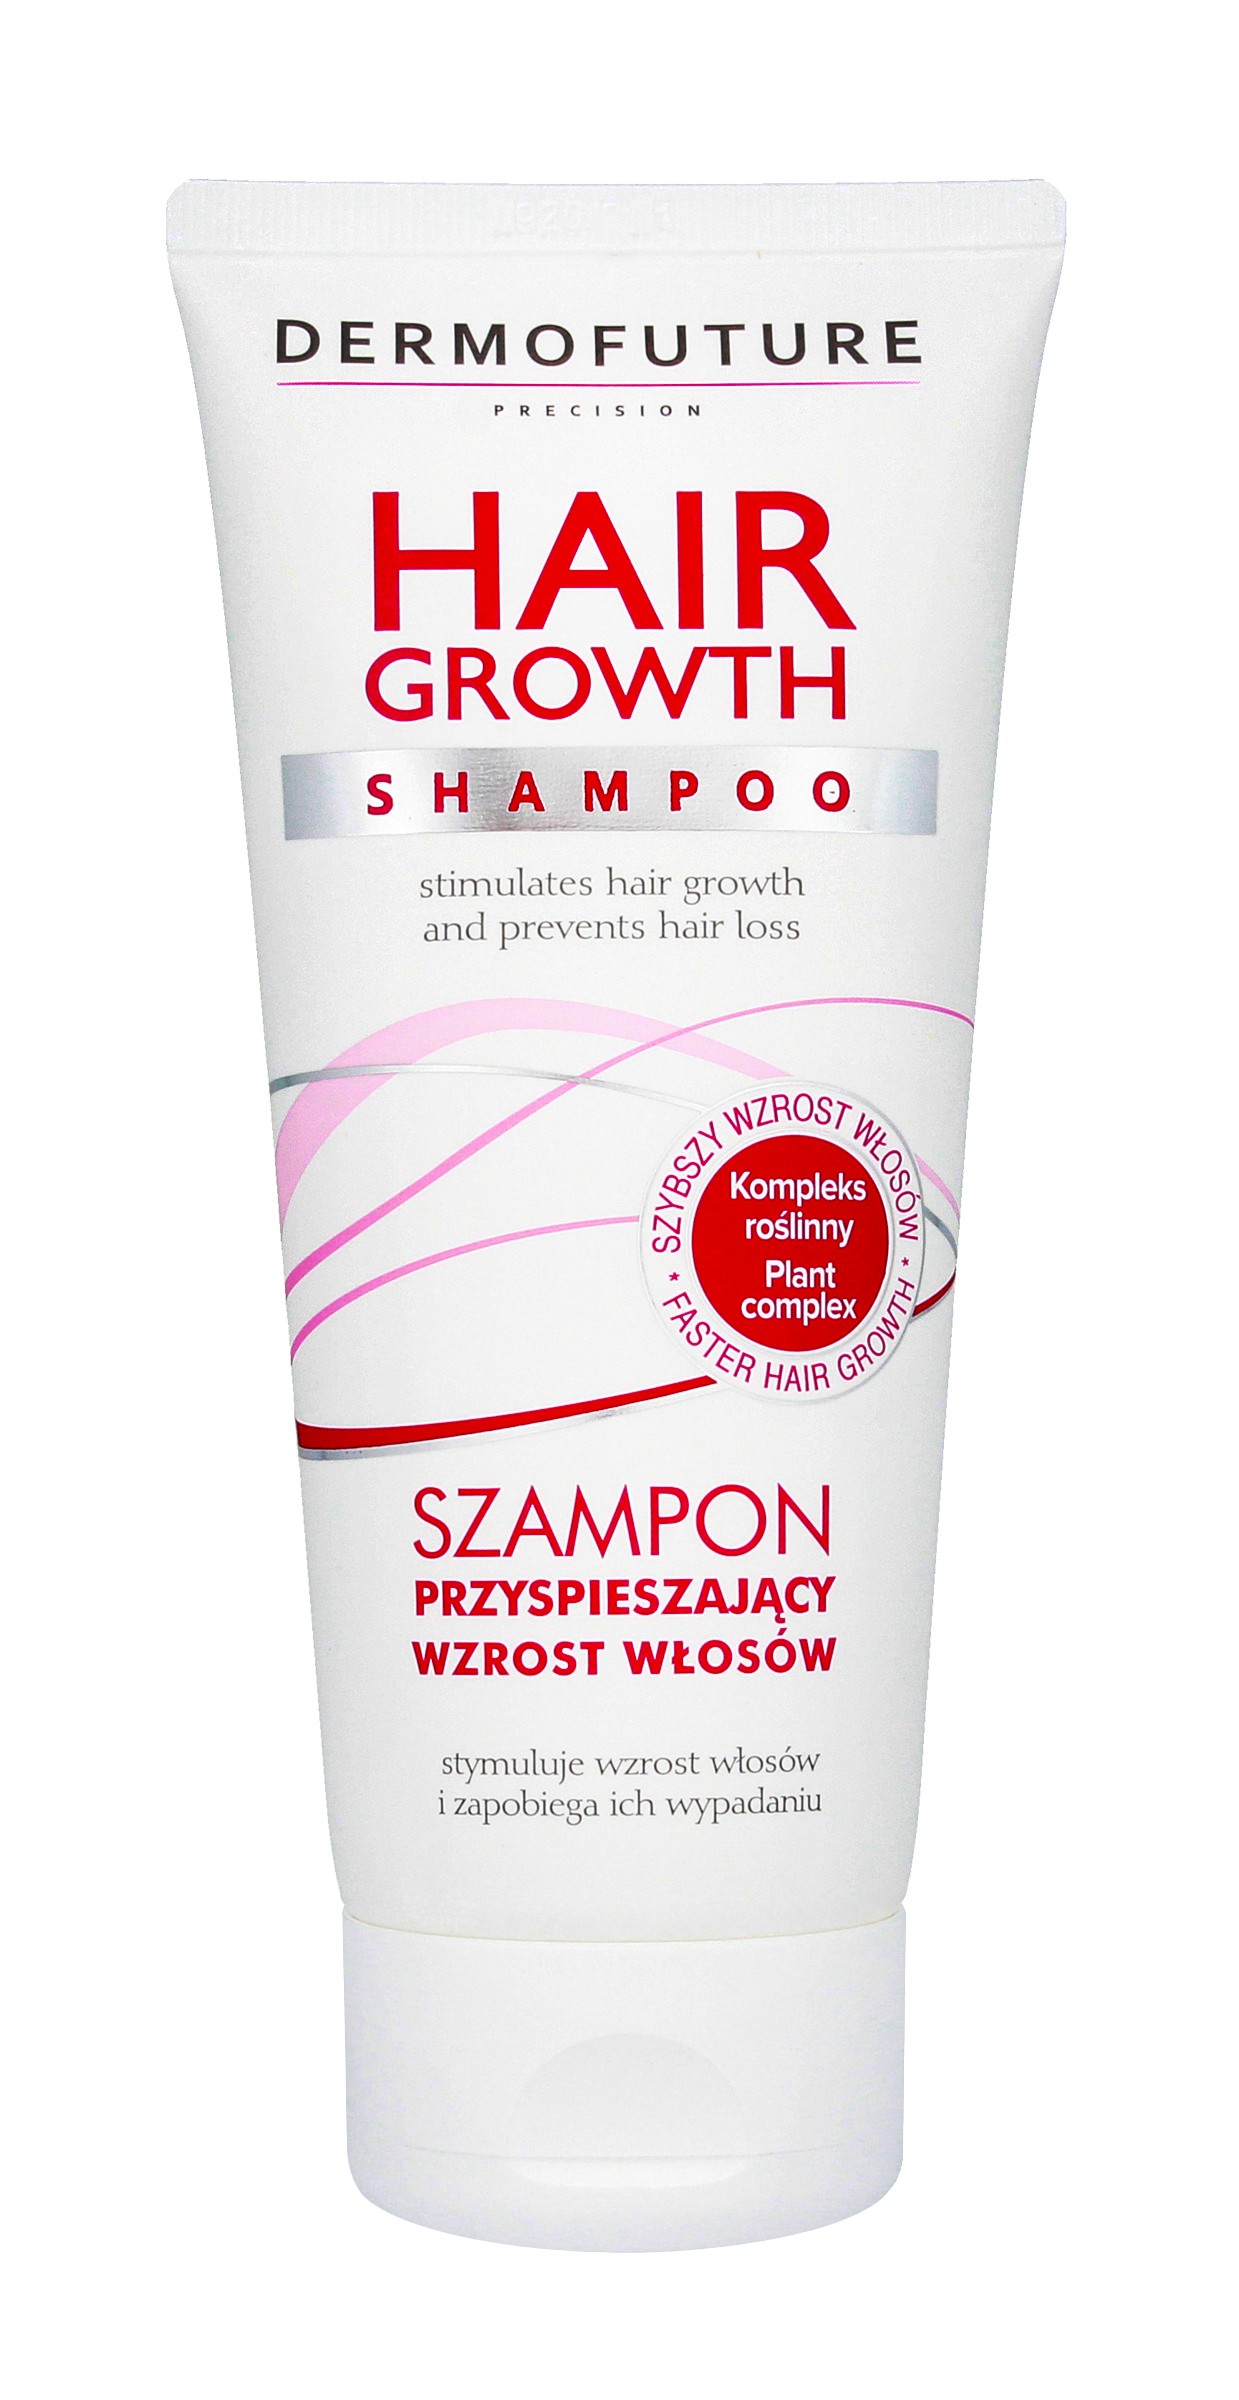 dermofuture szampon przyspieszajacy